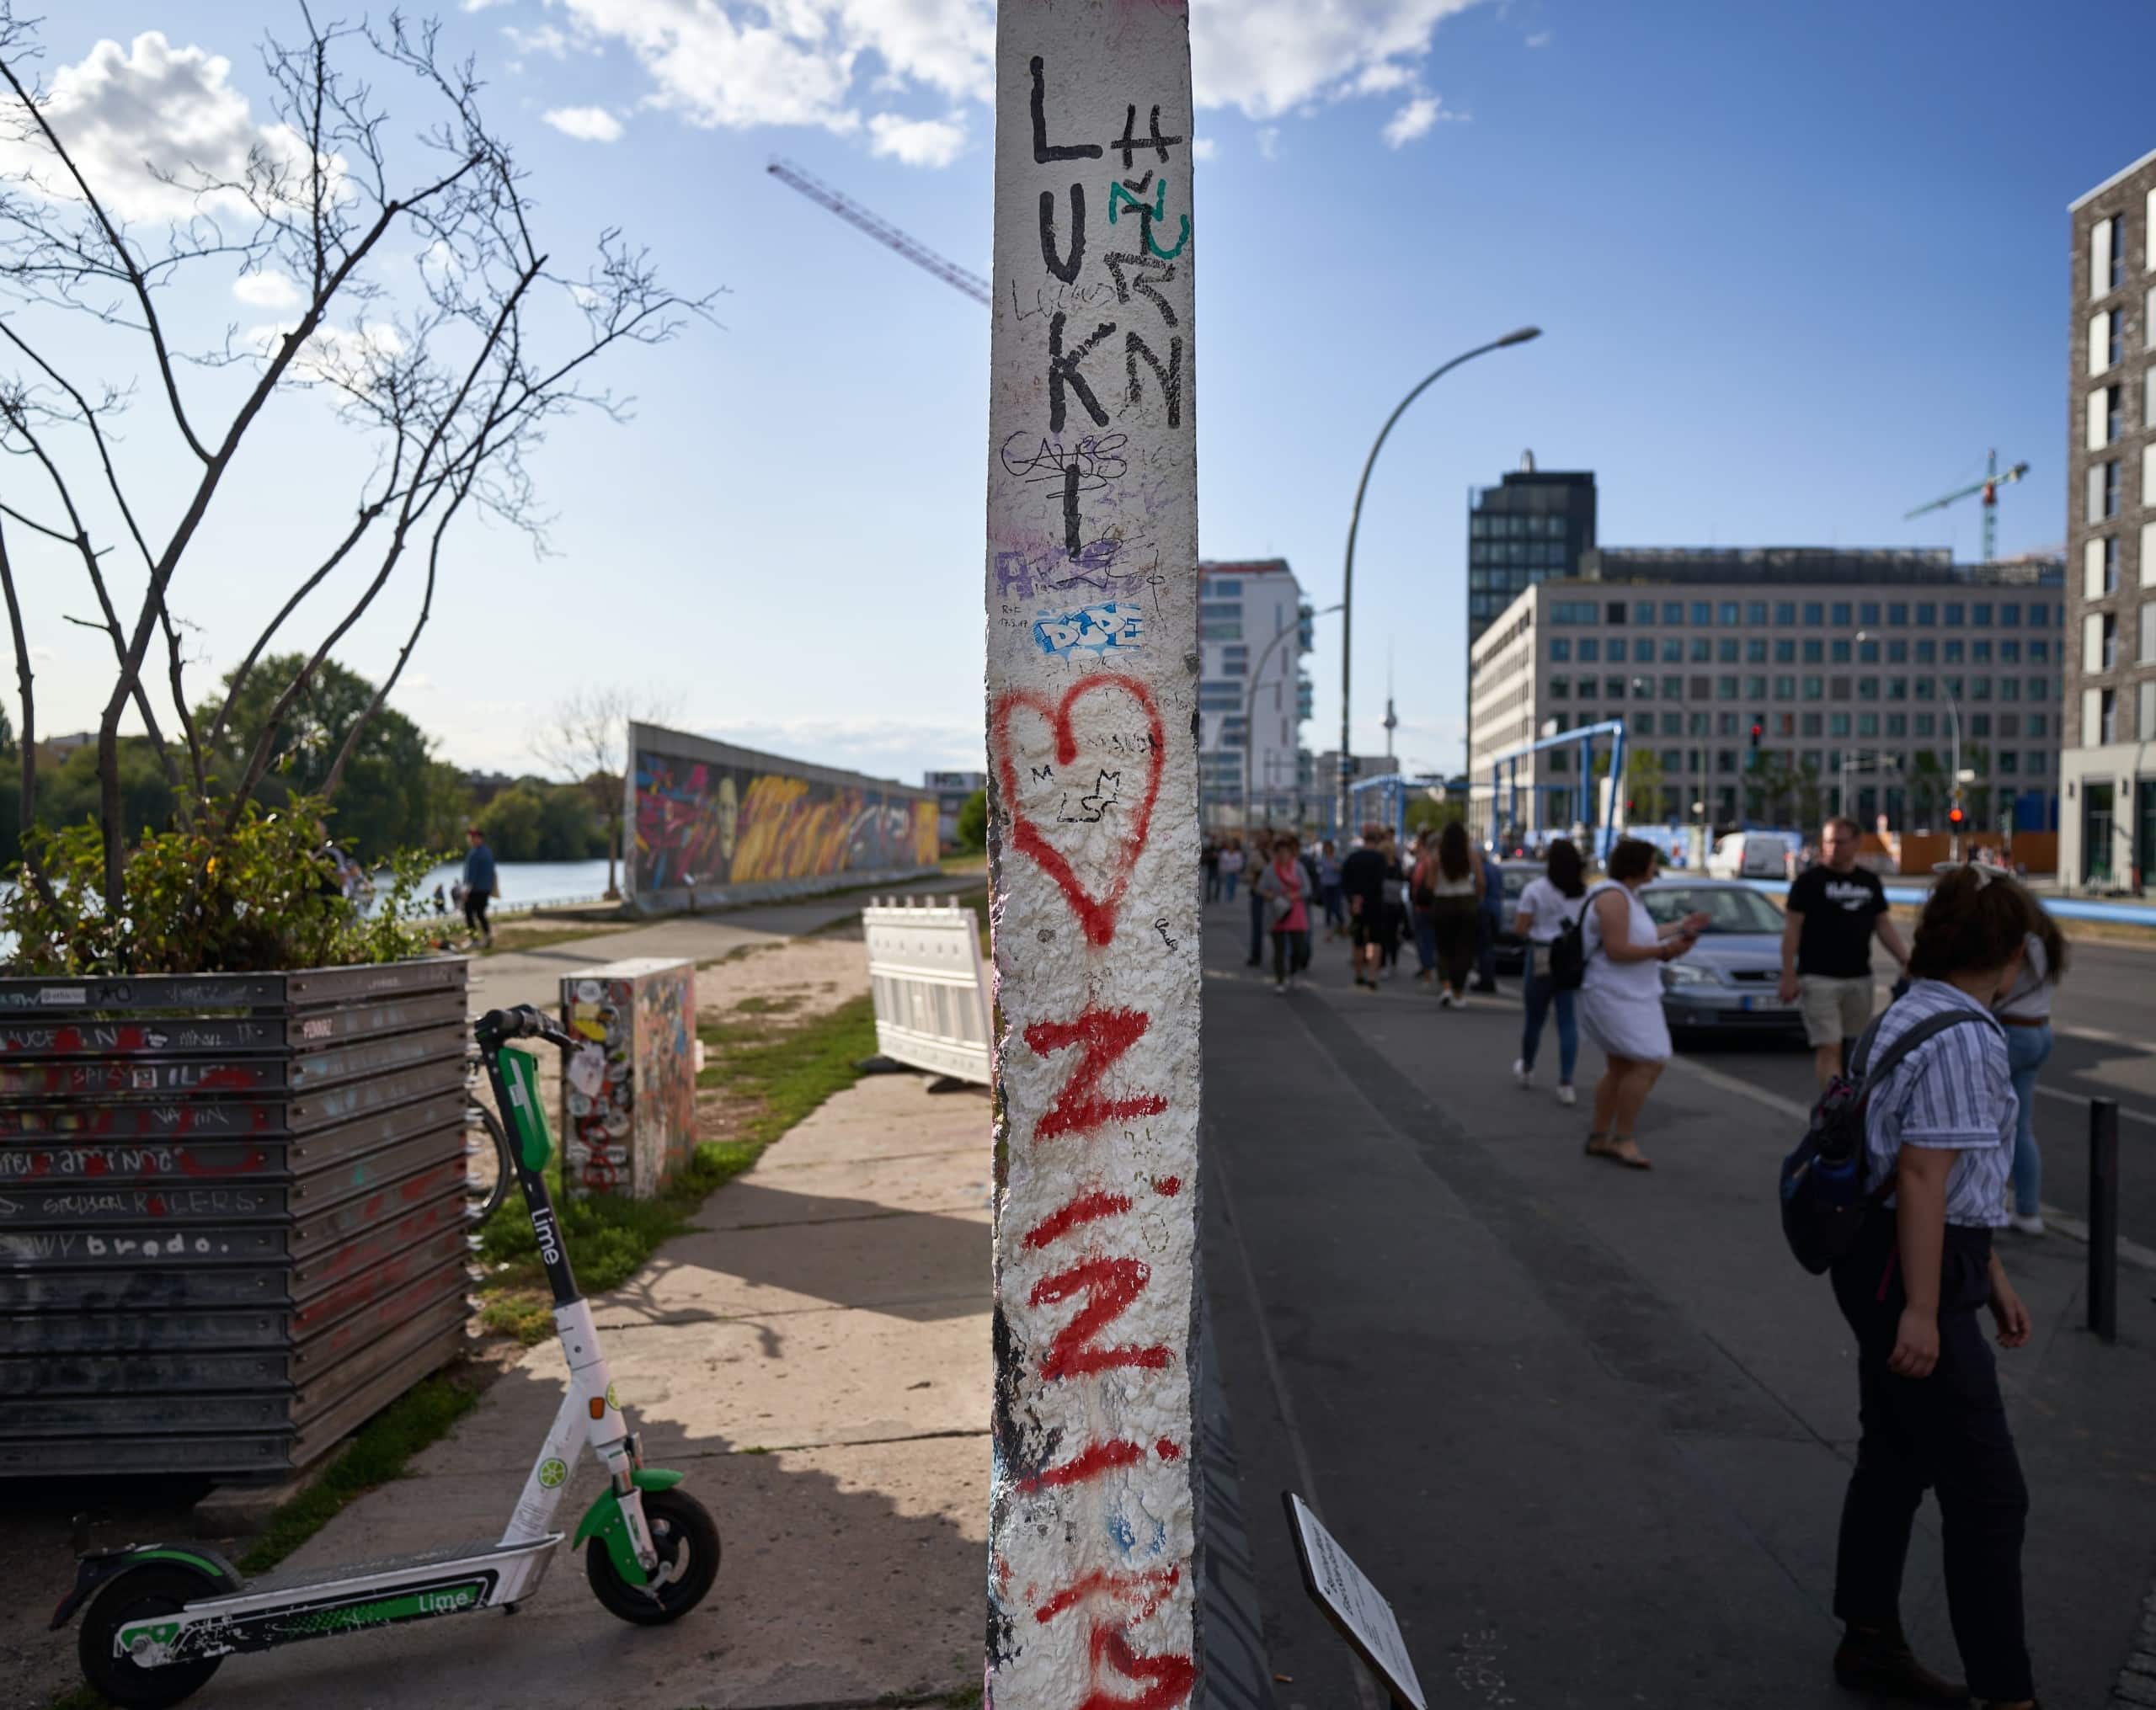 Teile der Berliner Mauer blieben erhalten und dienen heute als Mahnmal und Warnung. Bild: Unsplash